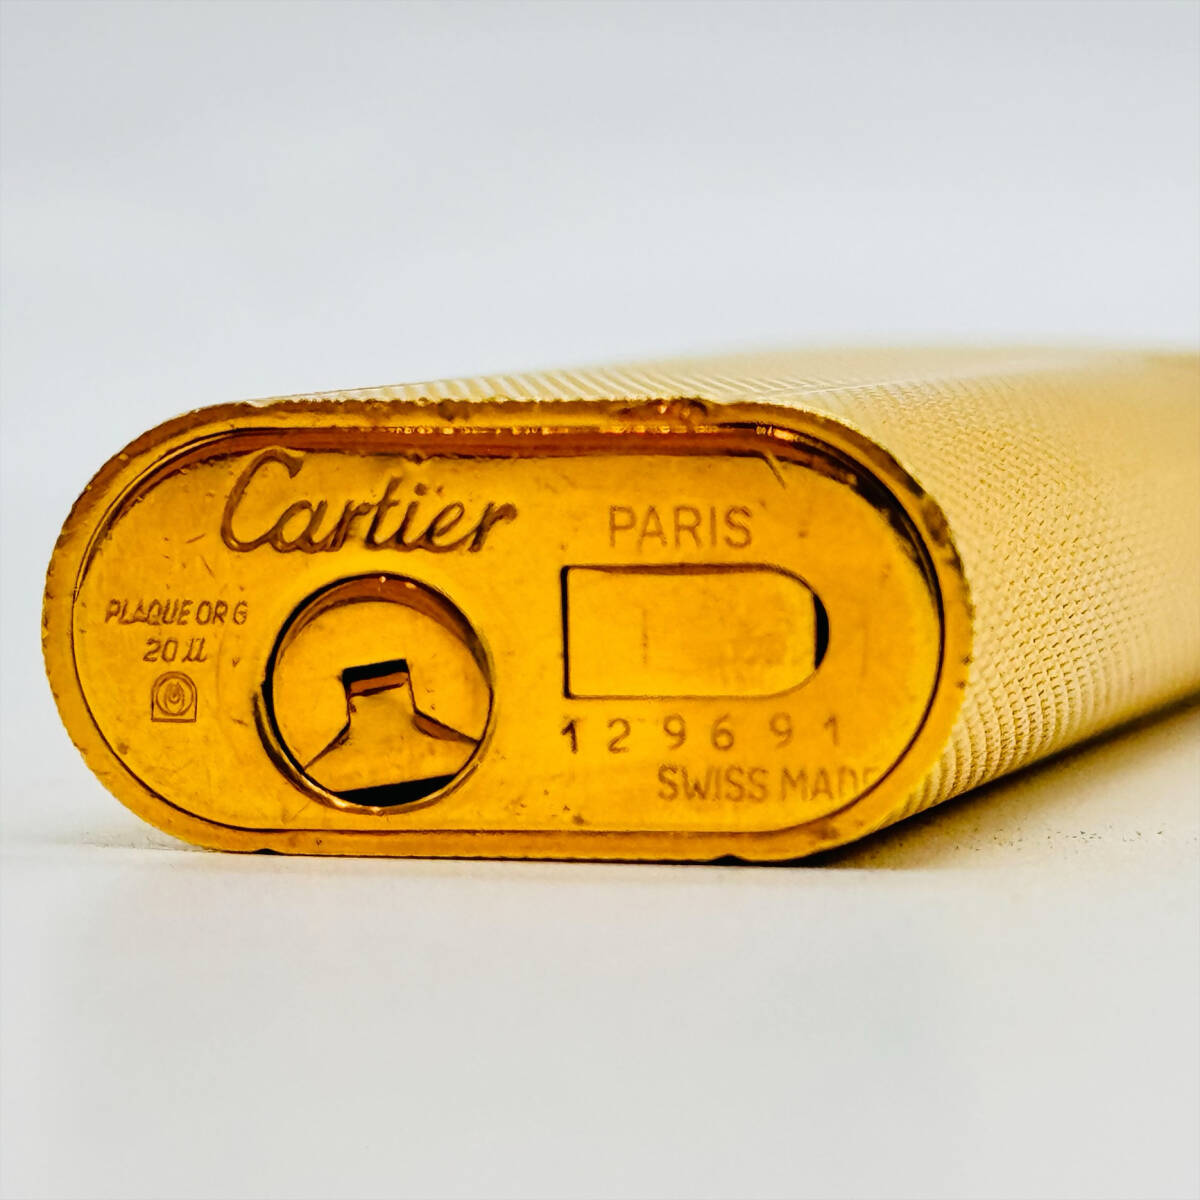 Cartier カルティエ ライター ゴールドカラー 14988 1円出品 高級 ブランド 喫煙具 ガスライター おしゃれ かっこいい タバコ 煙草_画像8